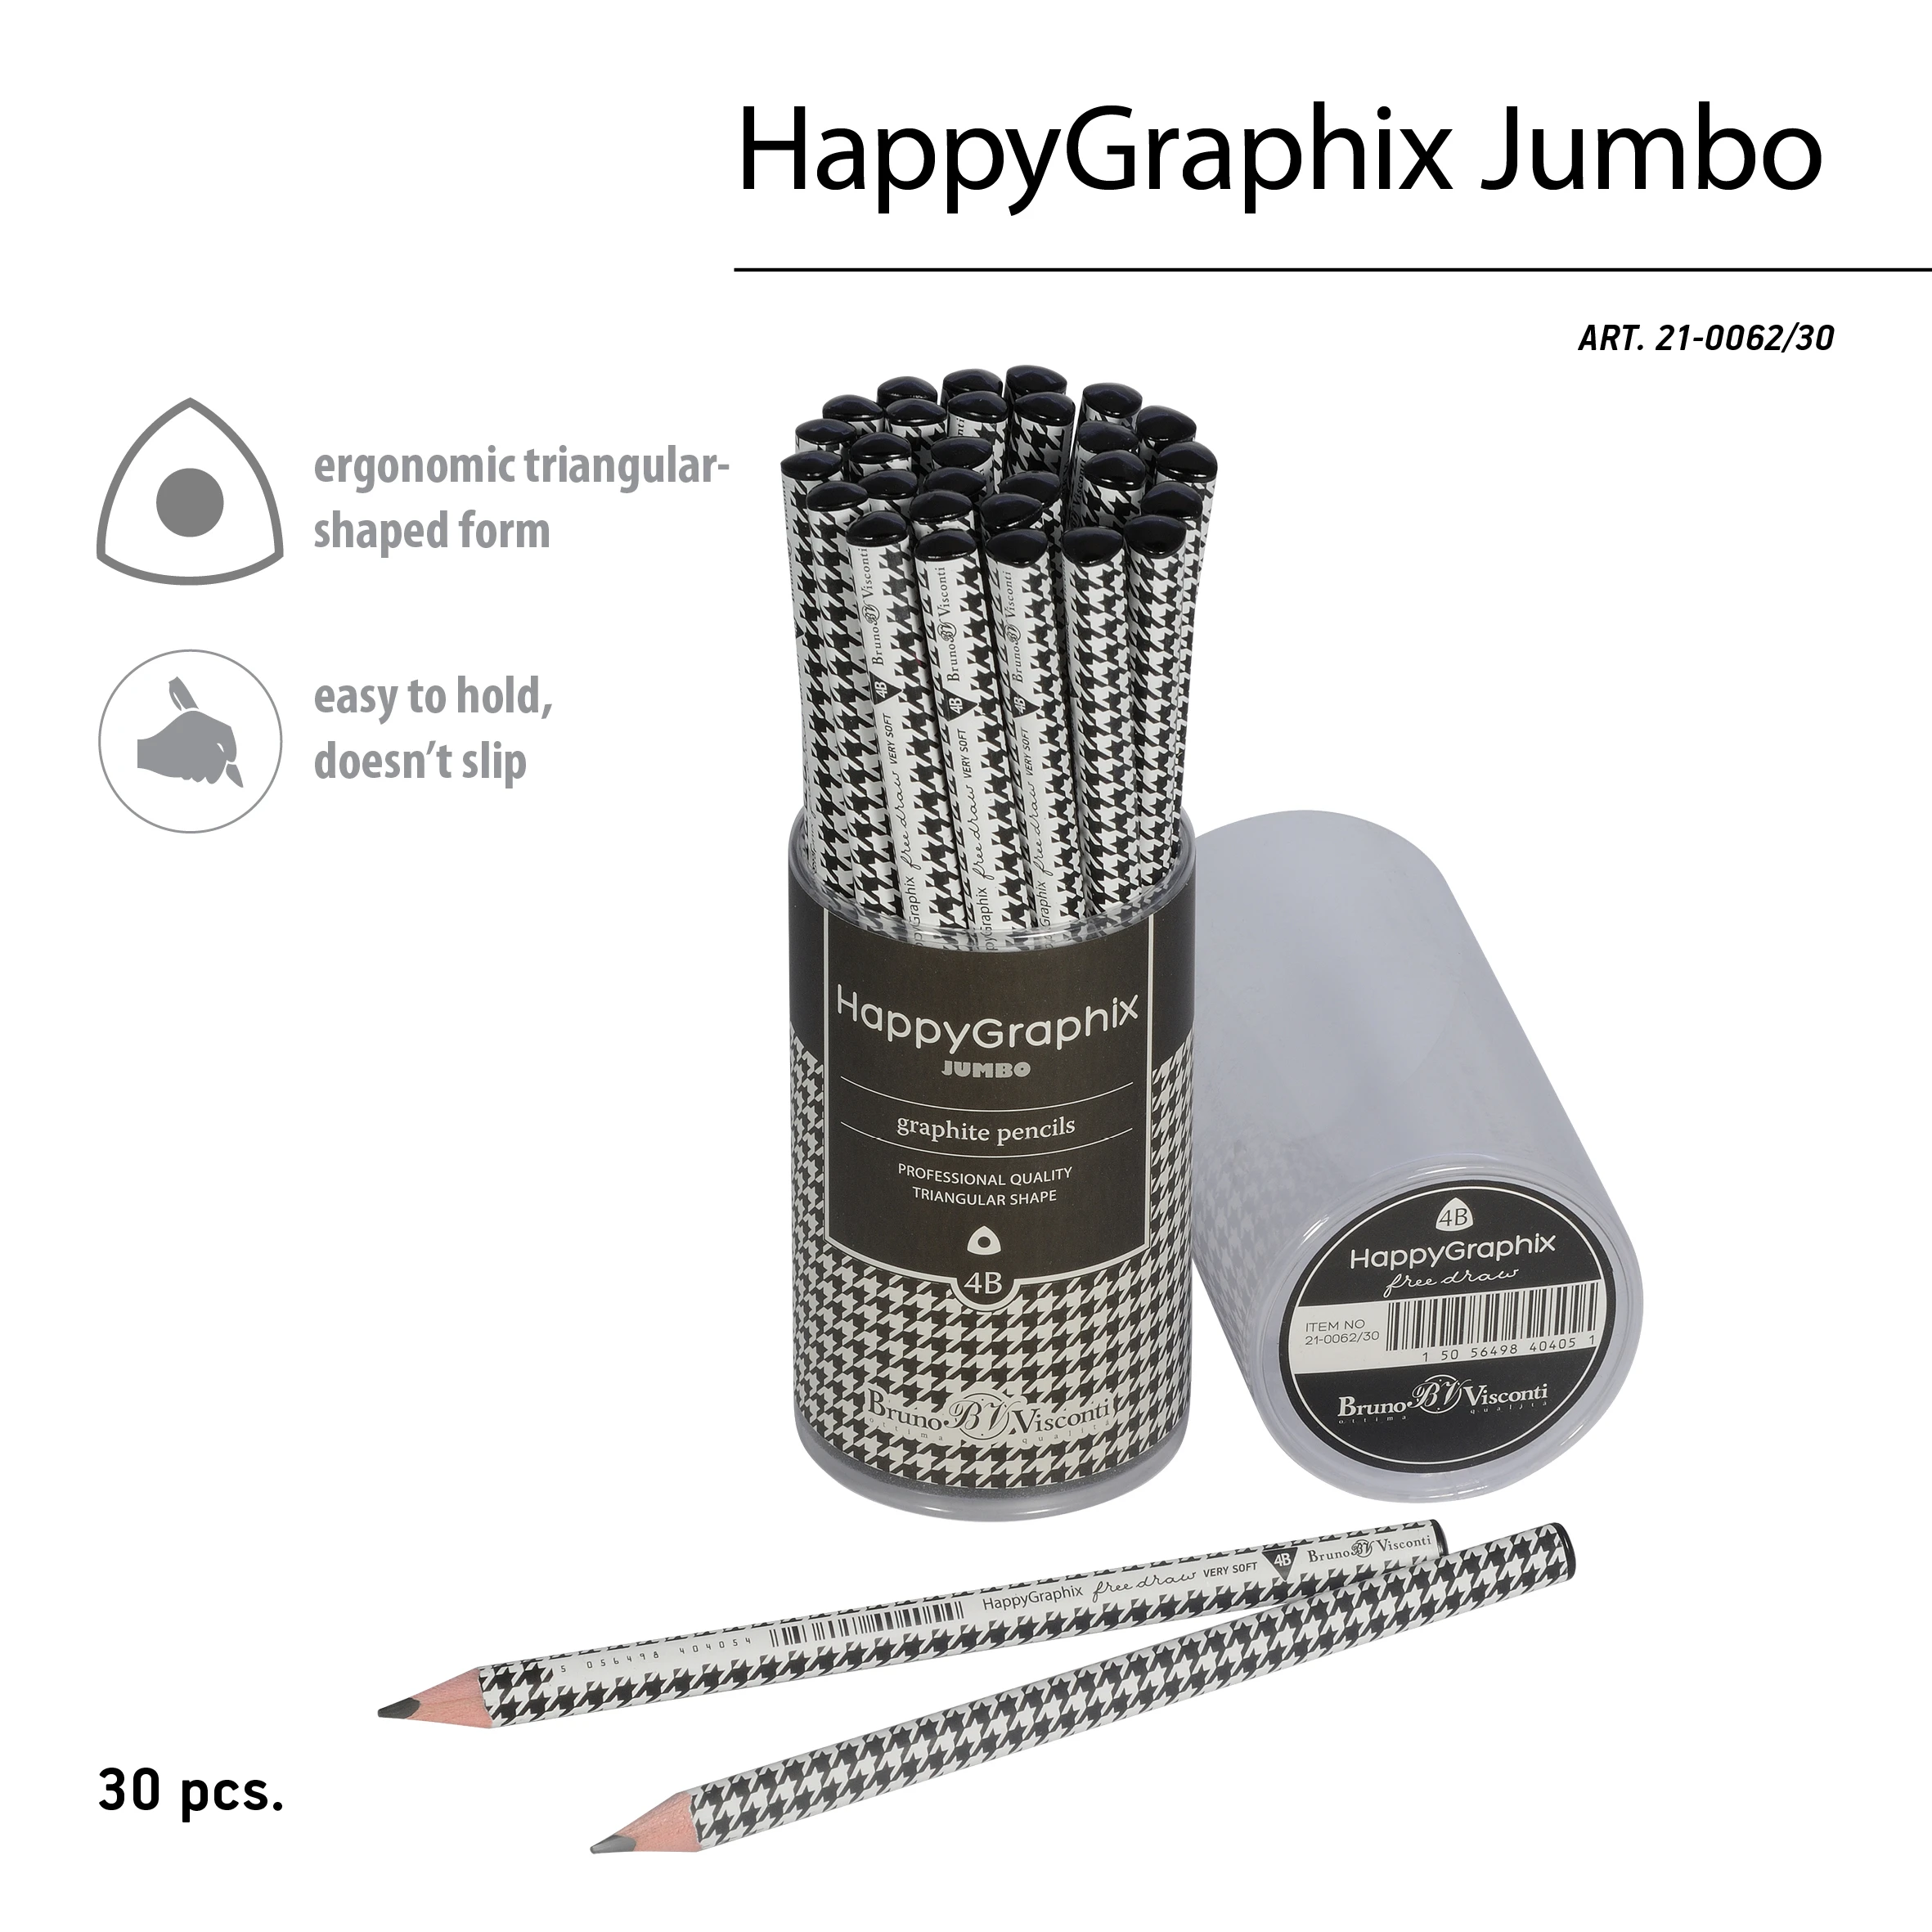 КАРАНДАШ ЧЕРНОГРАФИТОВЫЙ "HappyGraphix Jumbo. Модный паттерн" 4В, 3.5